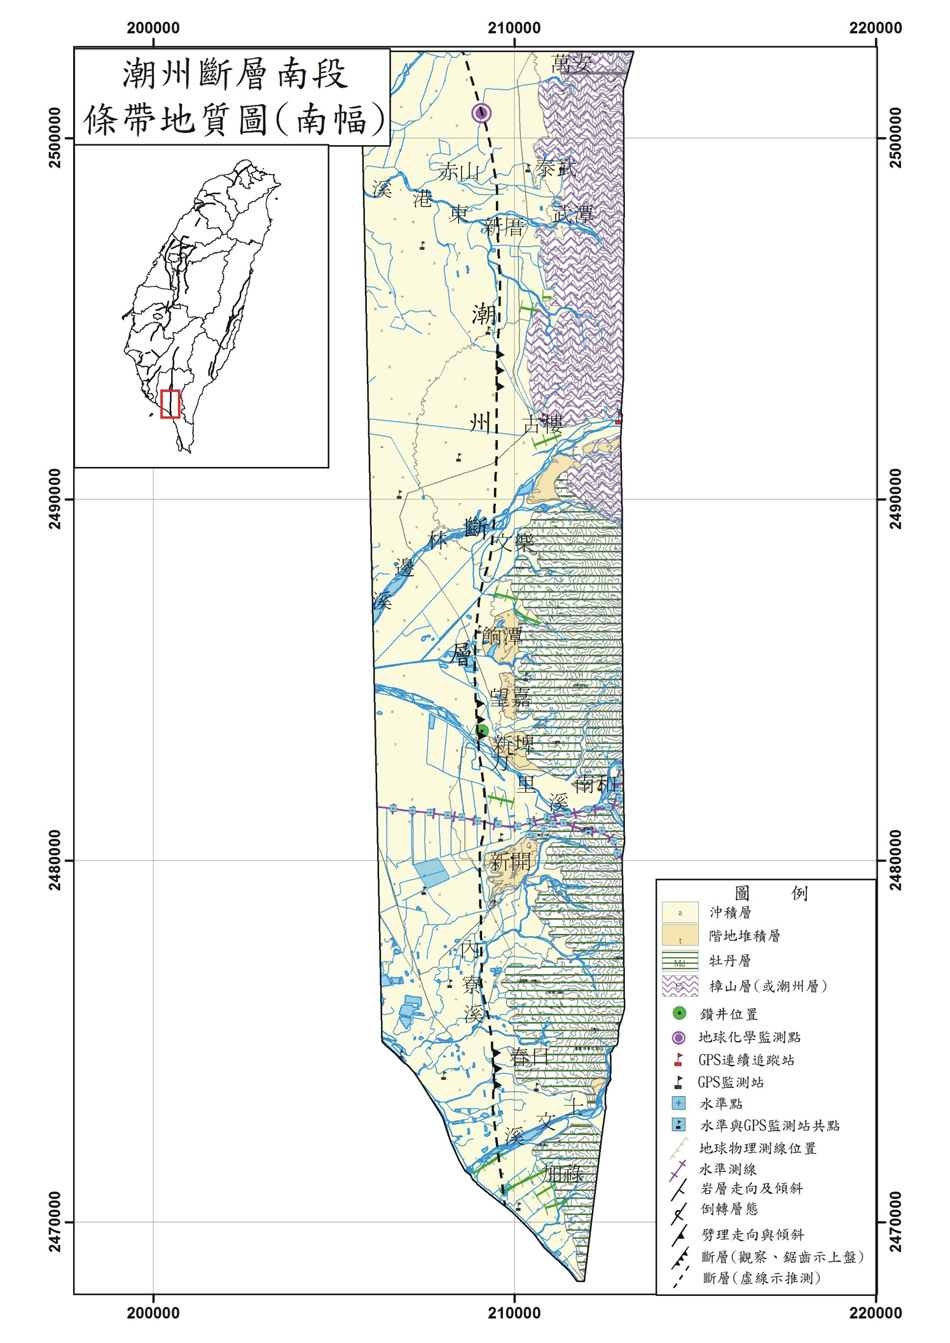 潮州斷層條帶地質圖。C：南段（南幅）